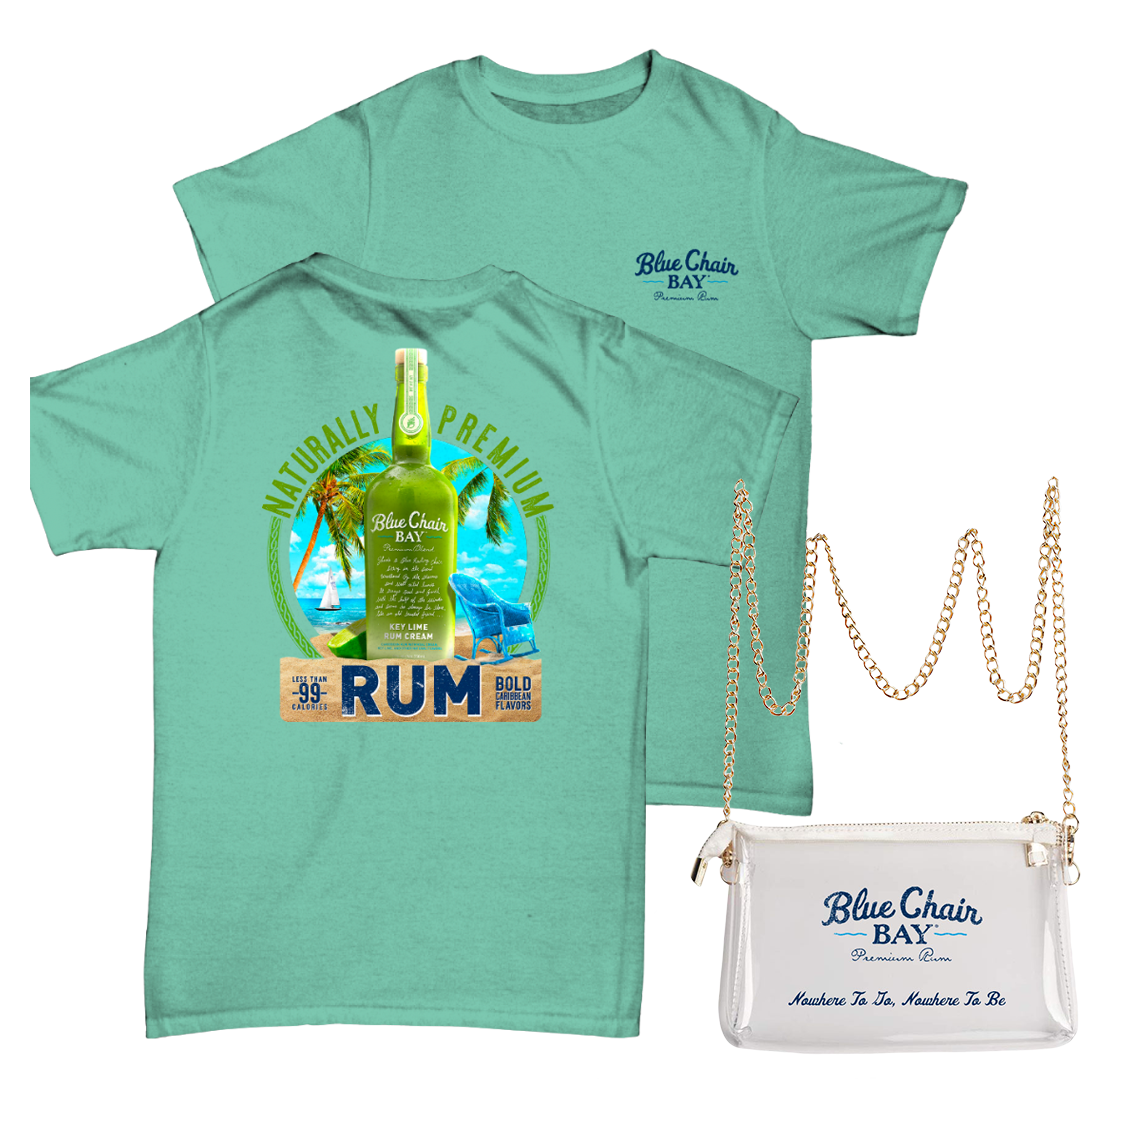 Rum Tee + Clear Stadium Bag